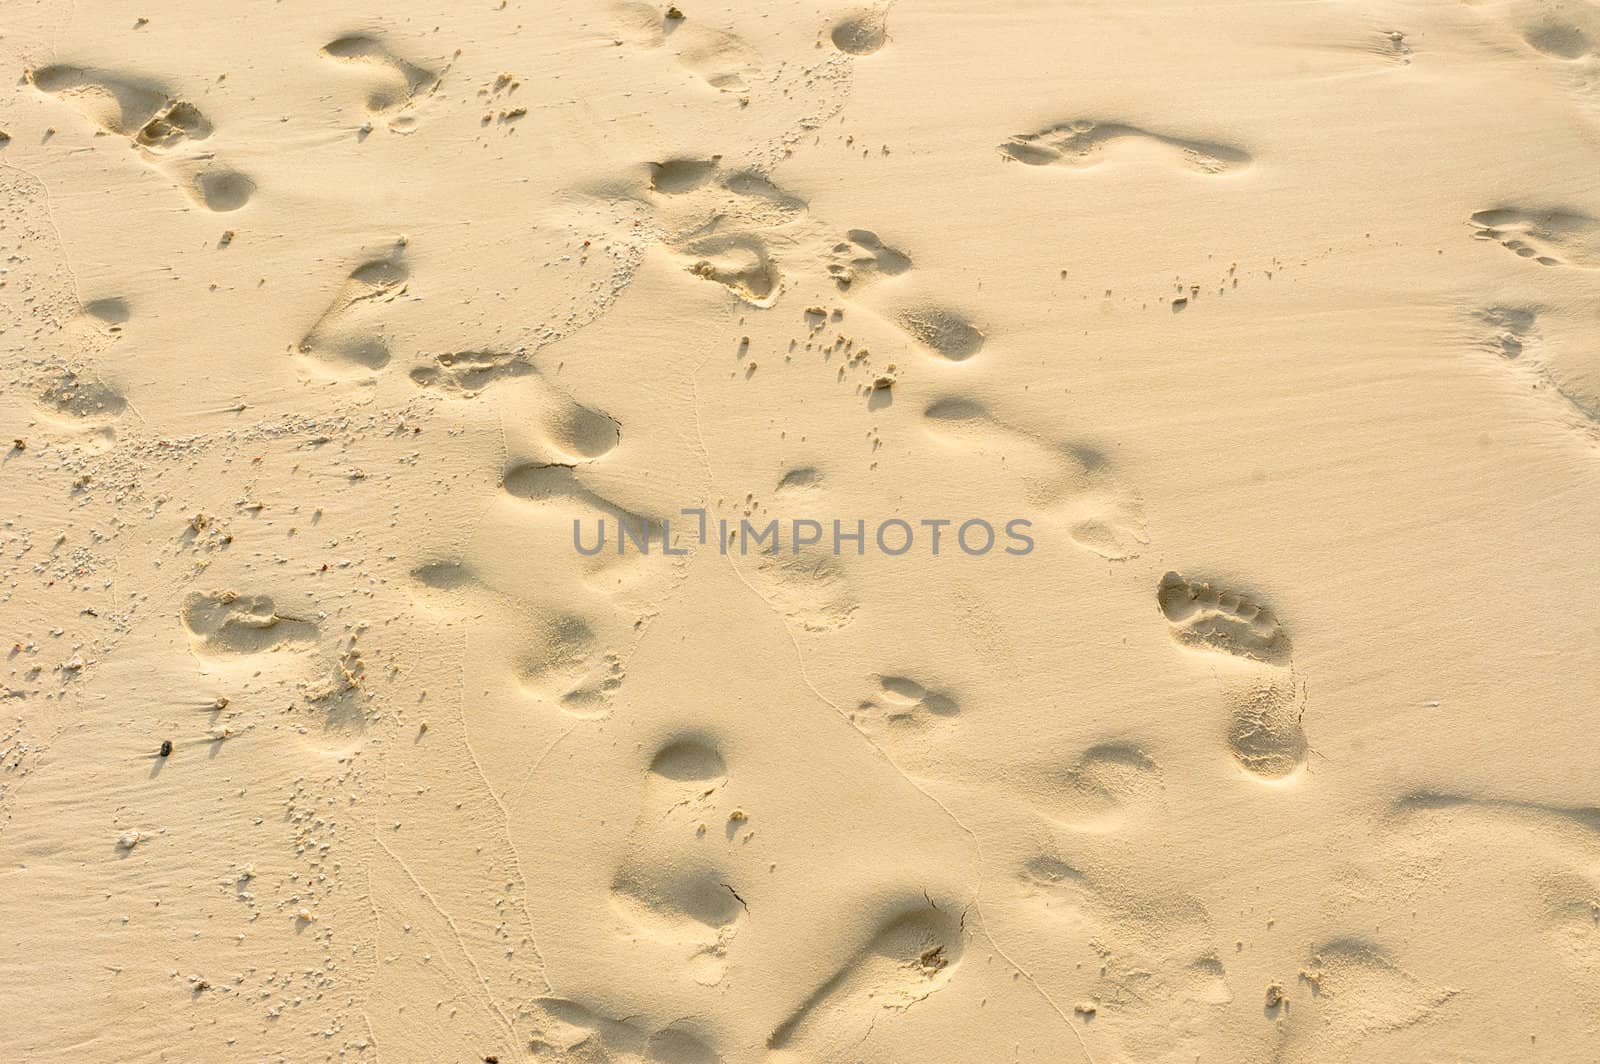 Footprints on the sand on a tropical beach